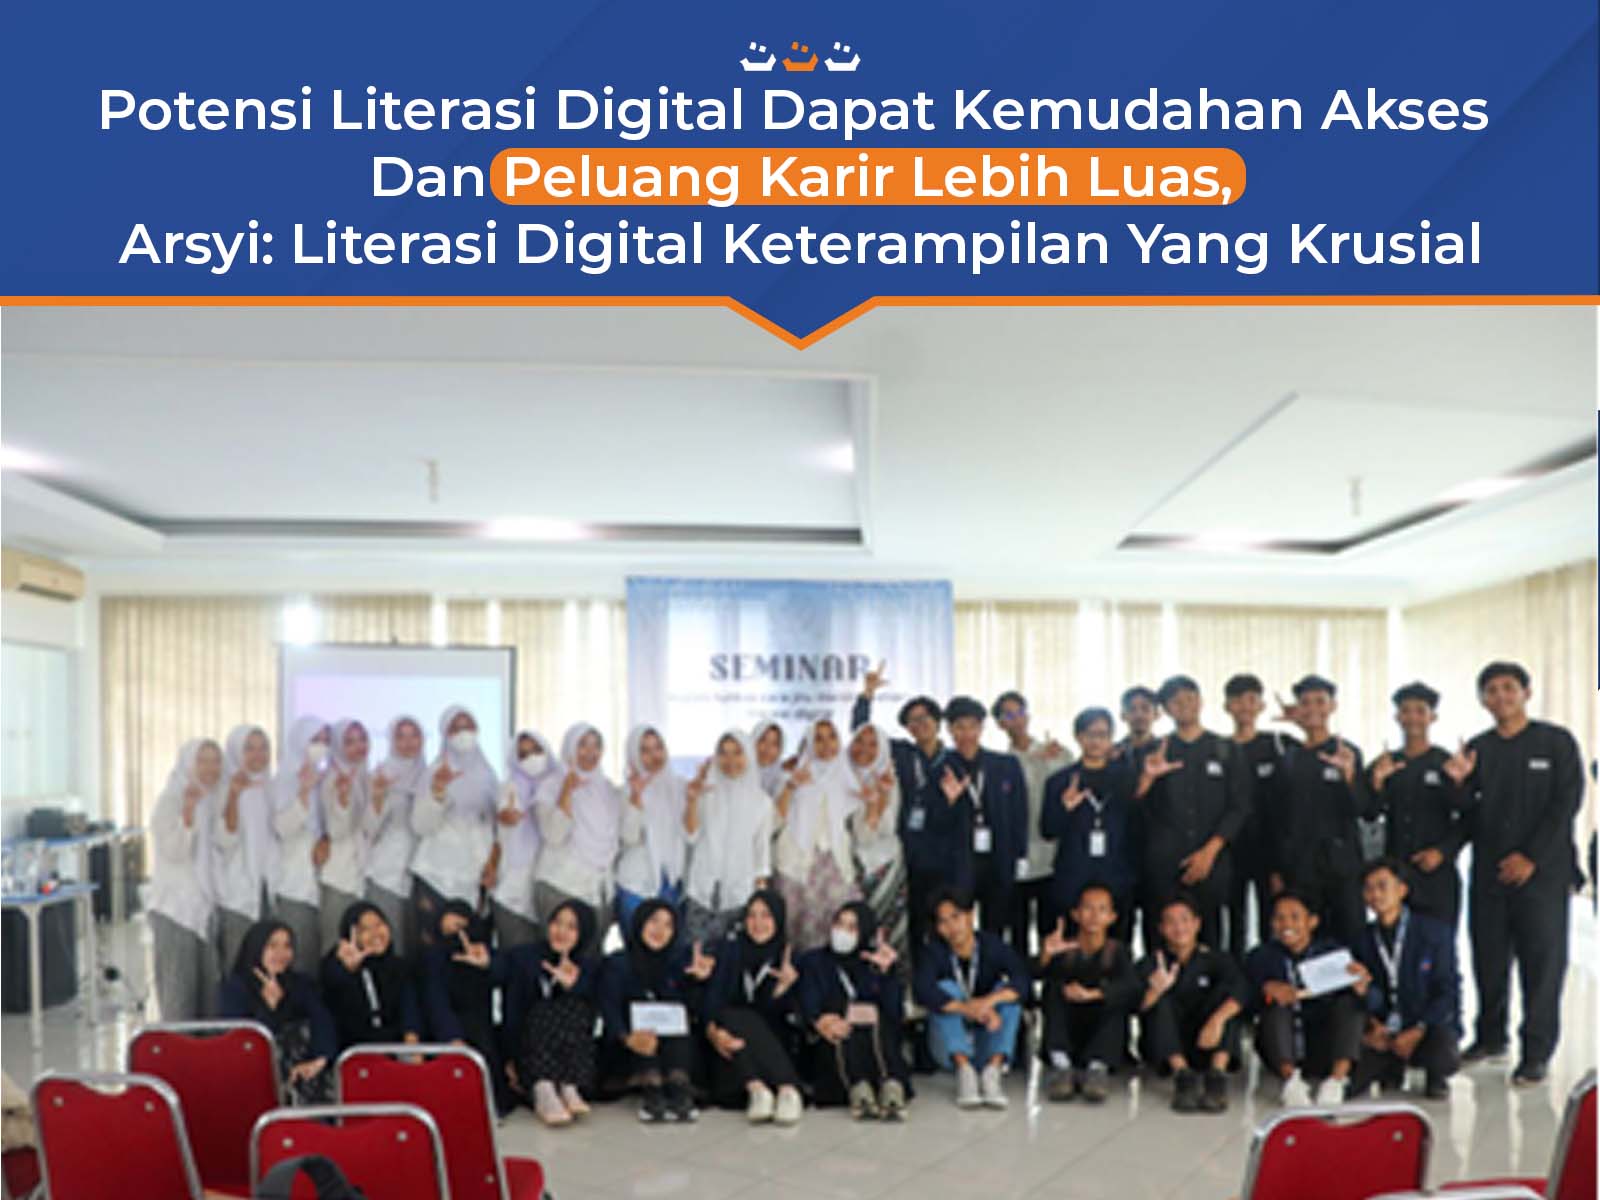 Literasi Digital Berpotensi Memudahan Akses Dan Peluang Karir Lebih Luas,Arsyi: Literasi Digital Keterampilan Yang Krusial